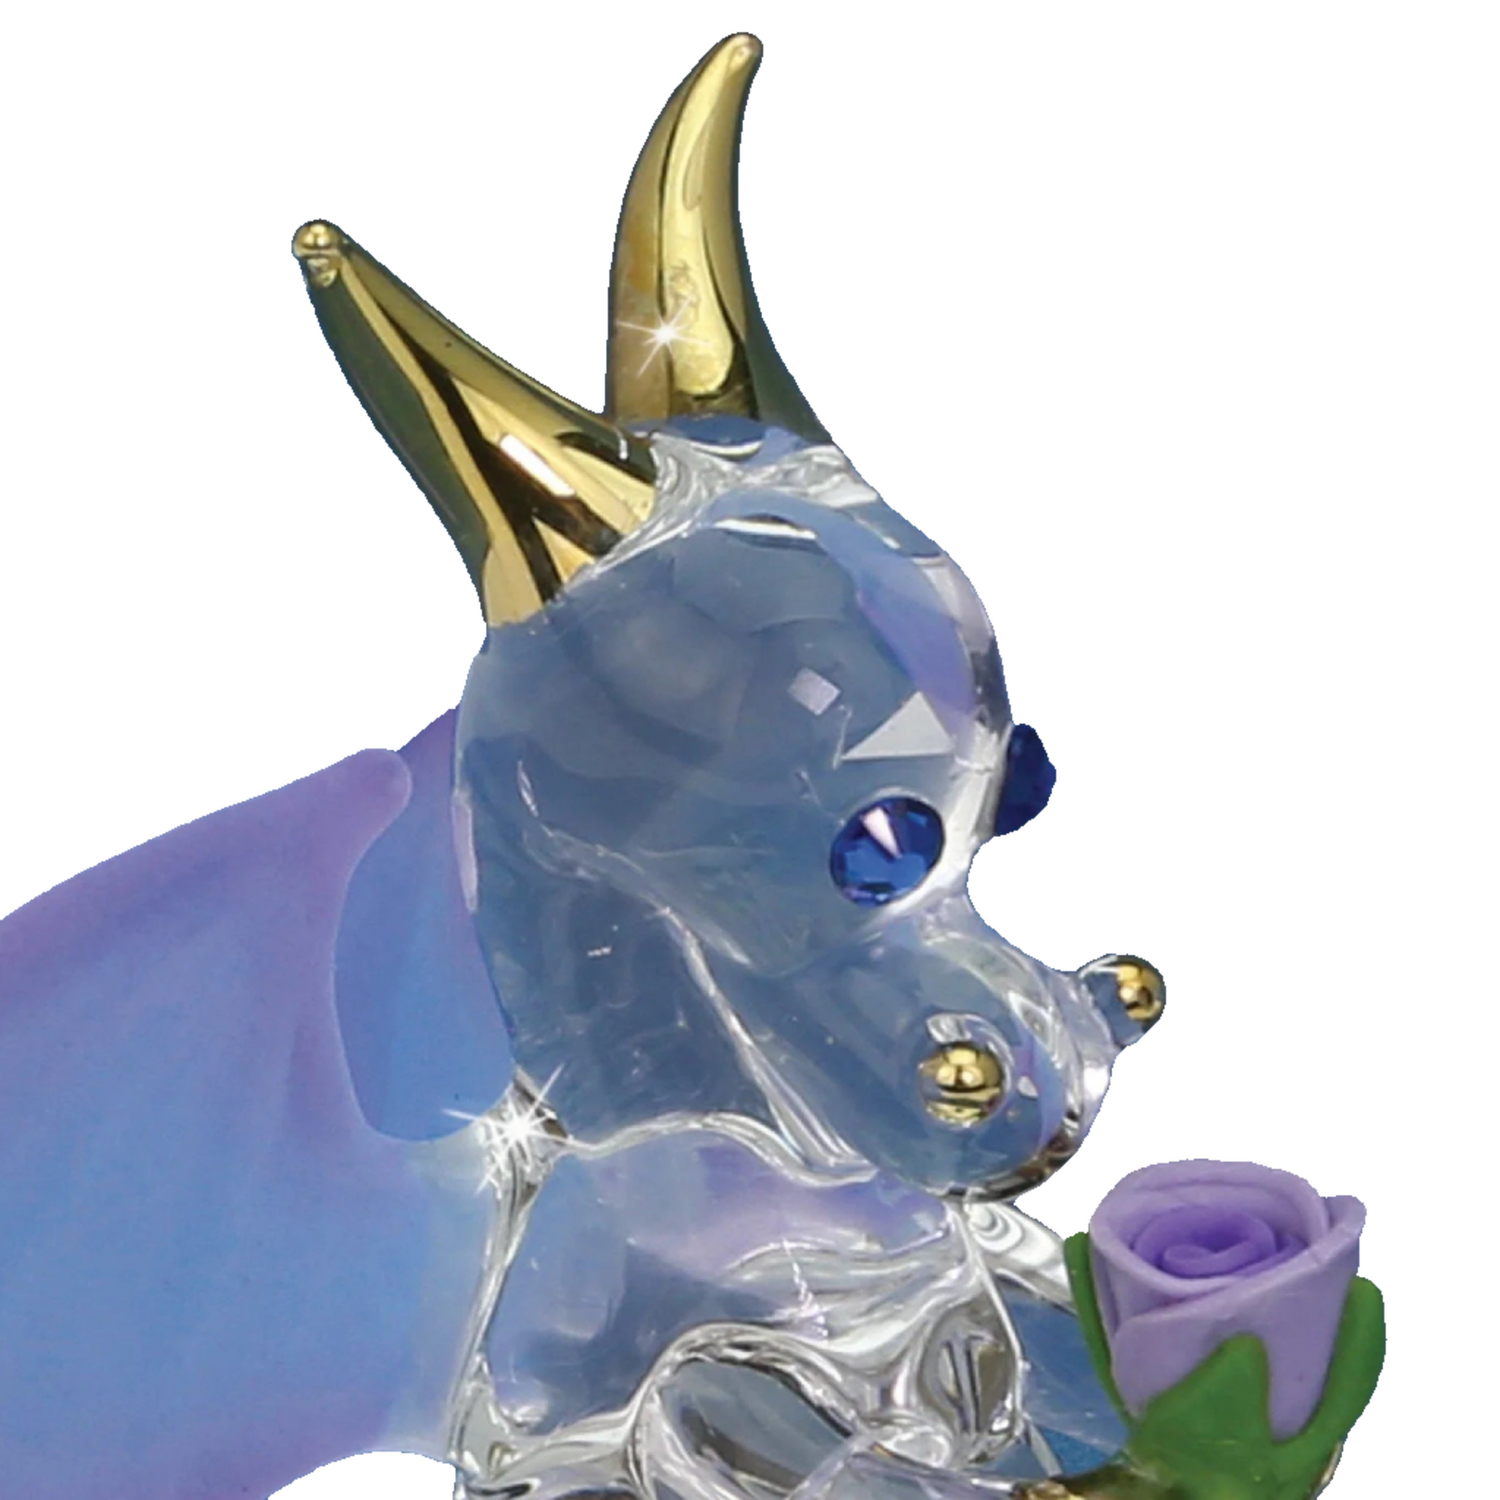 Glass Baron Sniffy the Dragon Figure